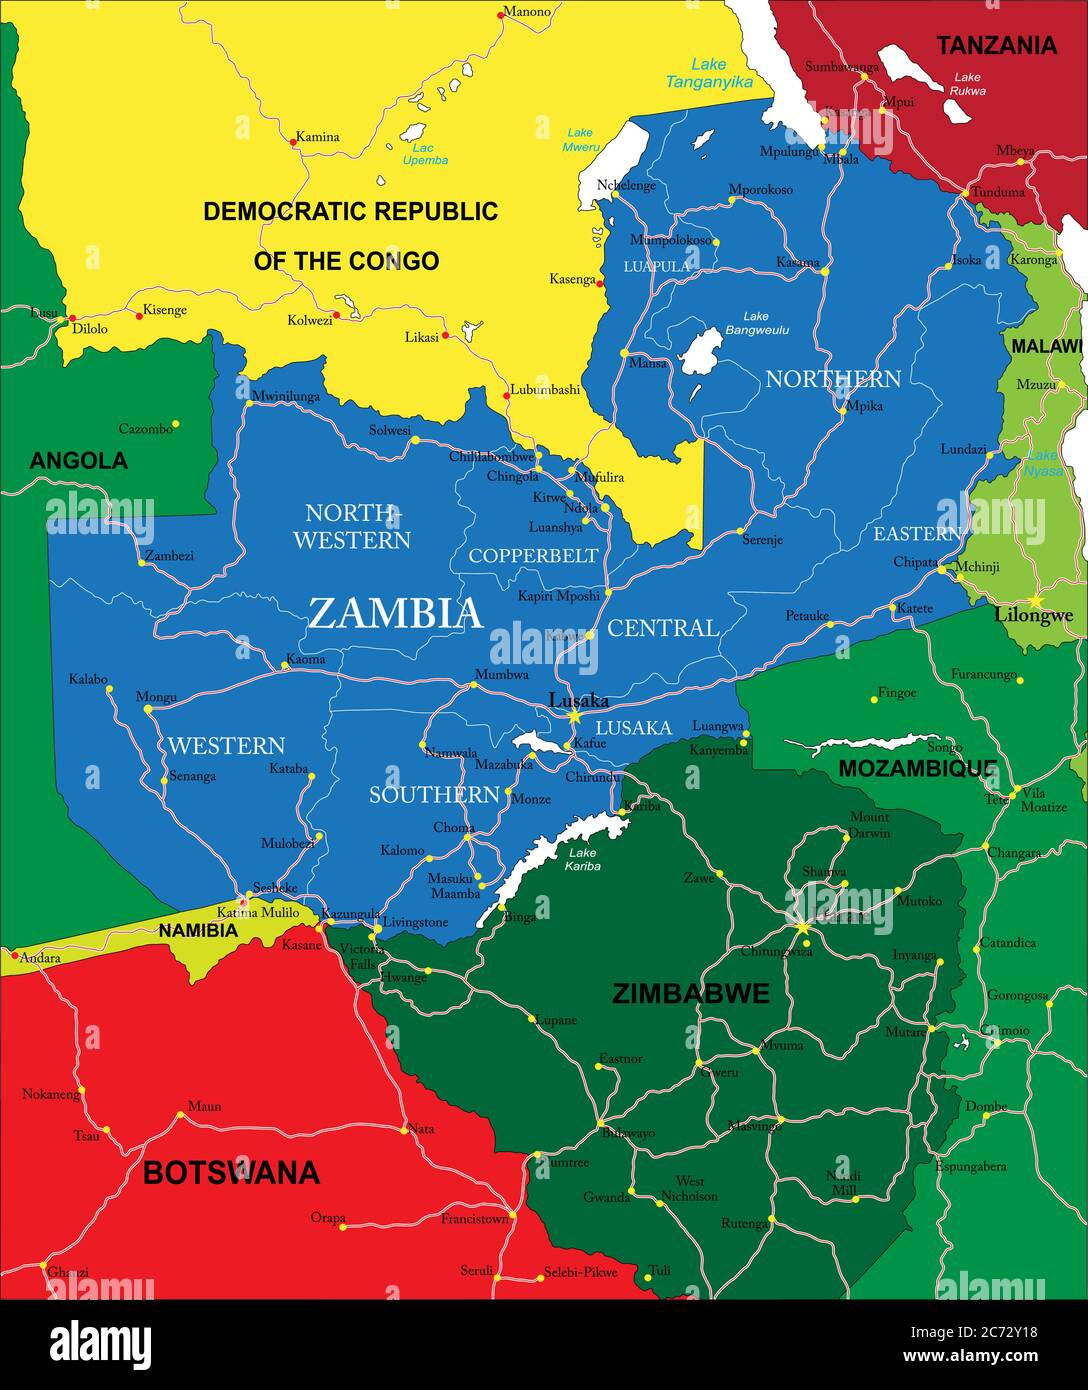 Sehr detaillierte Vektorkarte von Sambia mit Verwaltungsregionen, Hauptstädten und Straßen. Stock Vektor